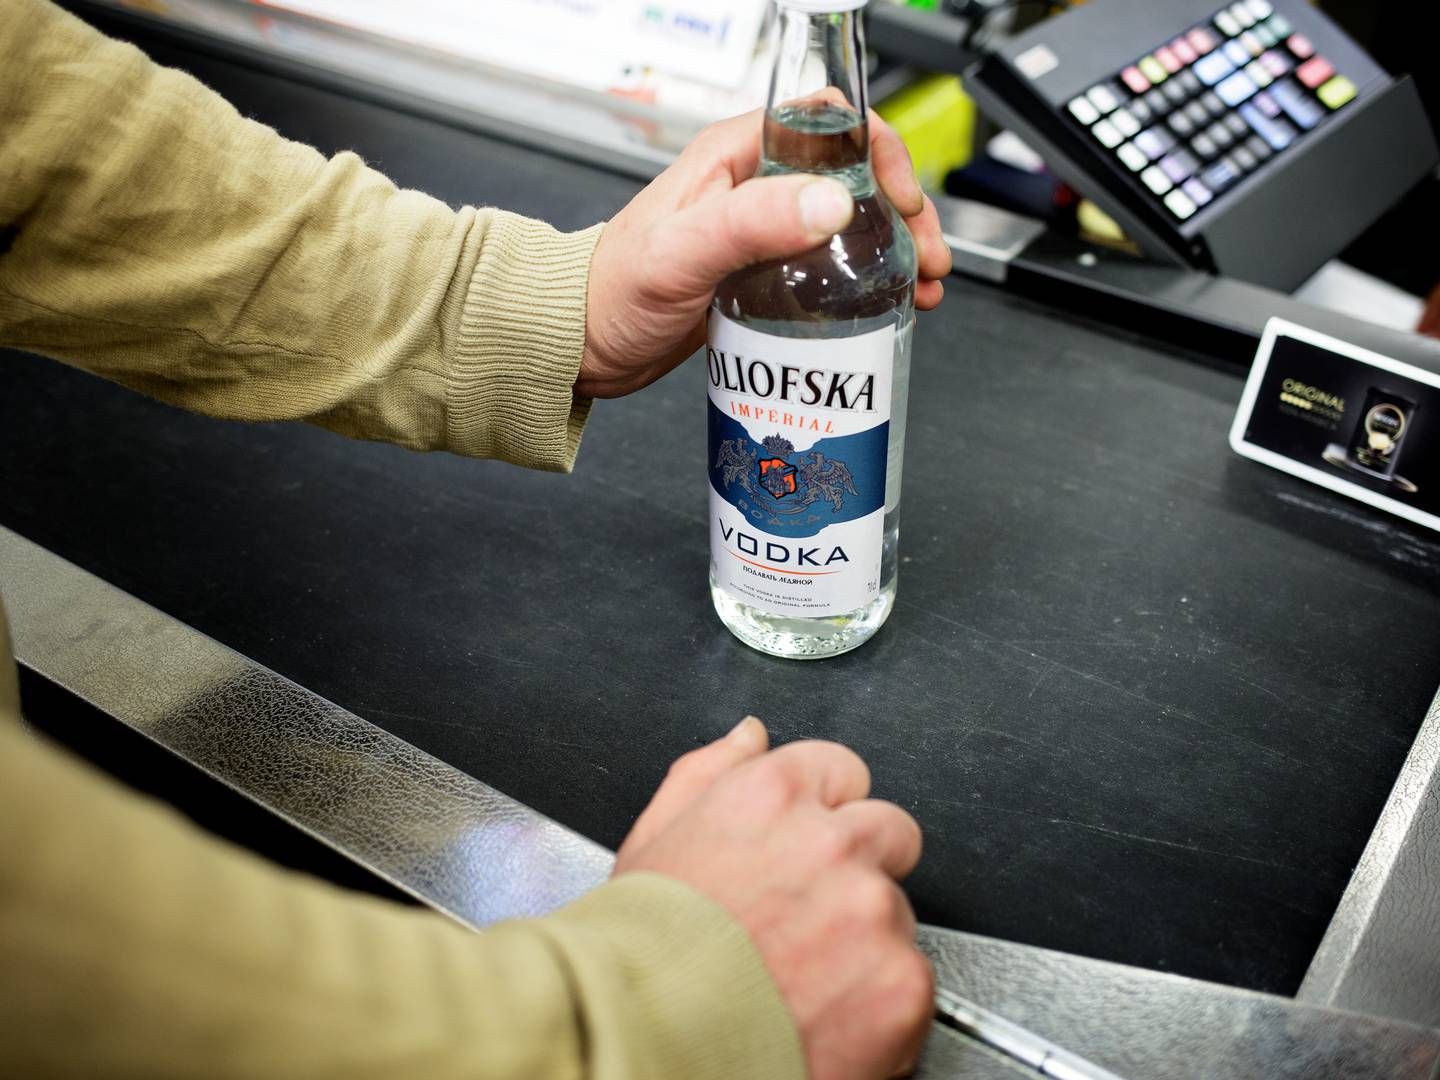 Blandt de forbrugere, der i forvejen har skruet ned for deres dagligvareindkøb, svarer over halvdelen i undersøgelse, at de helt har droppet at købe alkohol. | Foto: Lasse Kofod/Ritzau Scanpix.